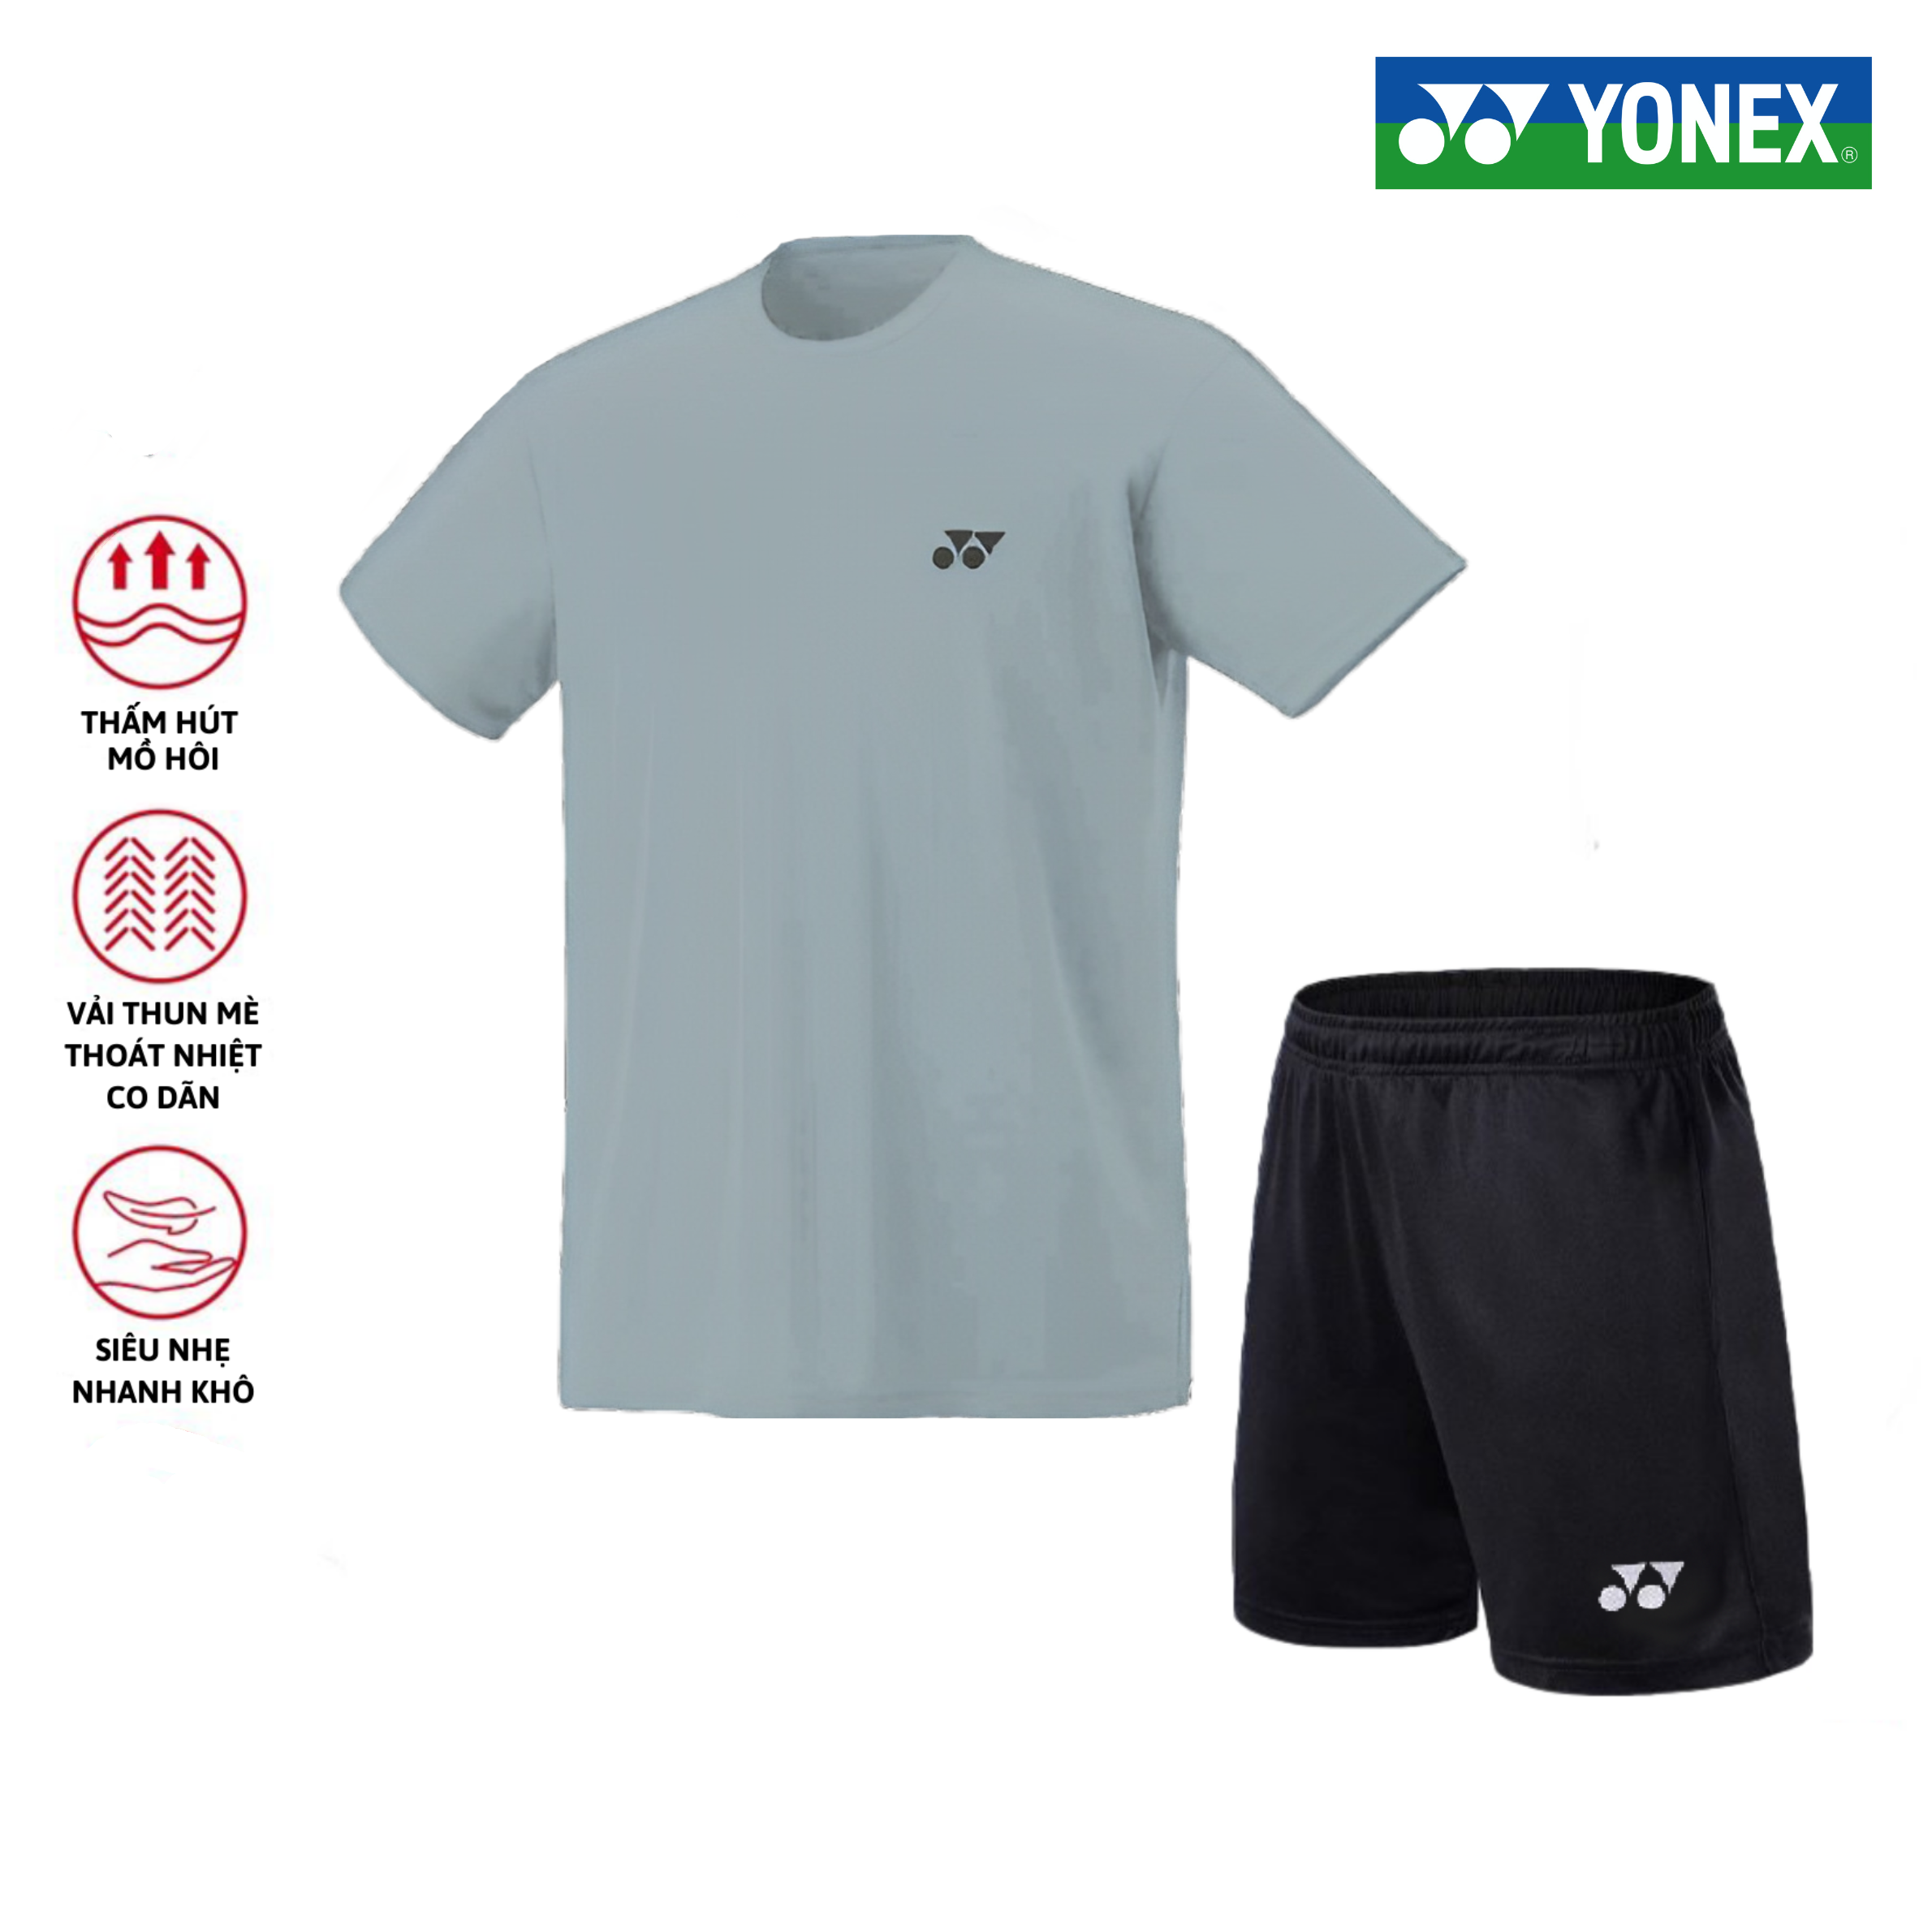 Áo cầu lông, quần cầu lông Yonex chuyên nghiệp mới nhất sử dụng tập luyện và thi đấu cầu lông T7